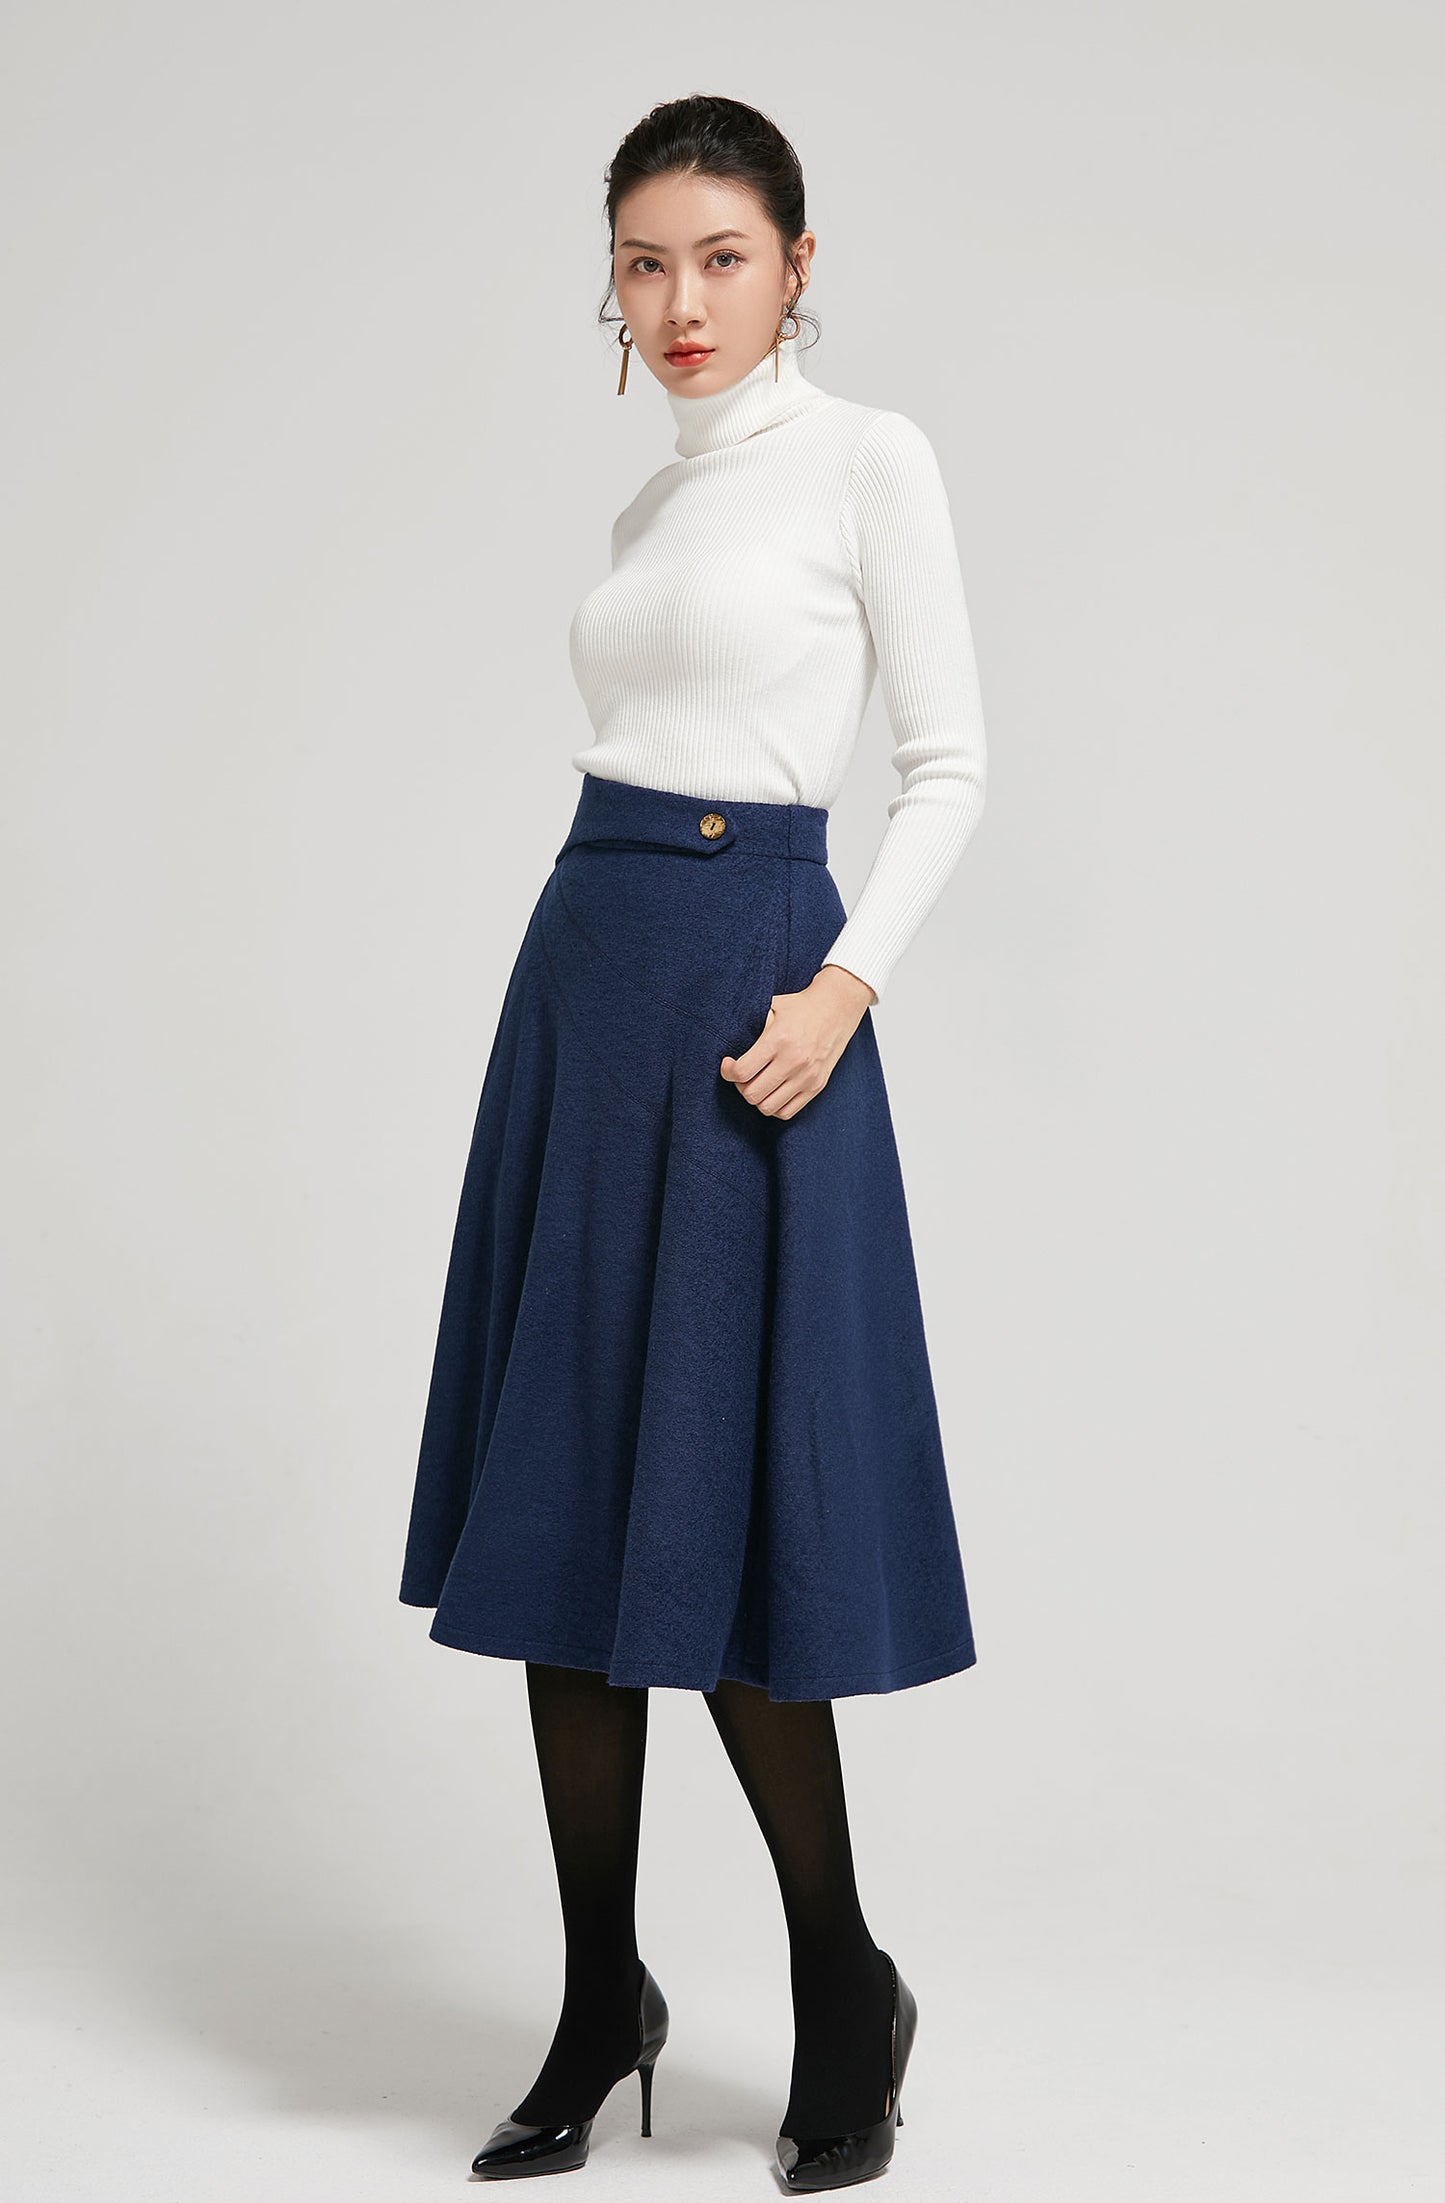 feminine 50s high waist A line wool skirt 2301#